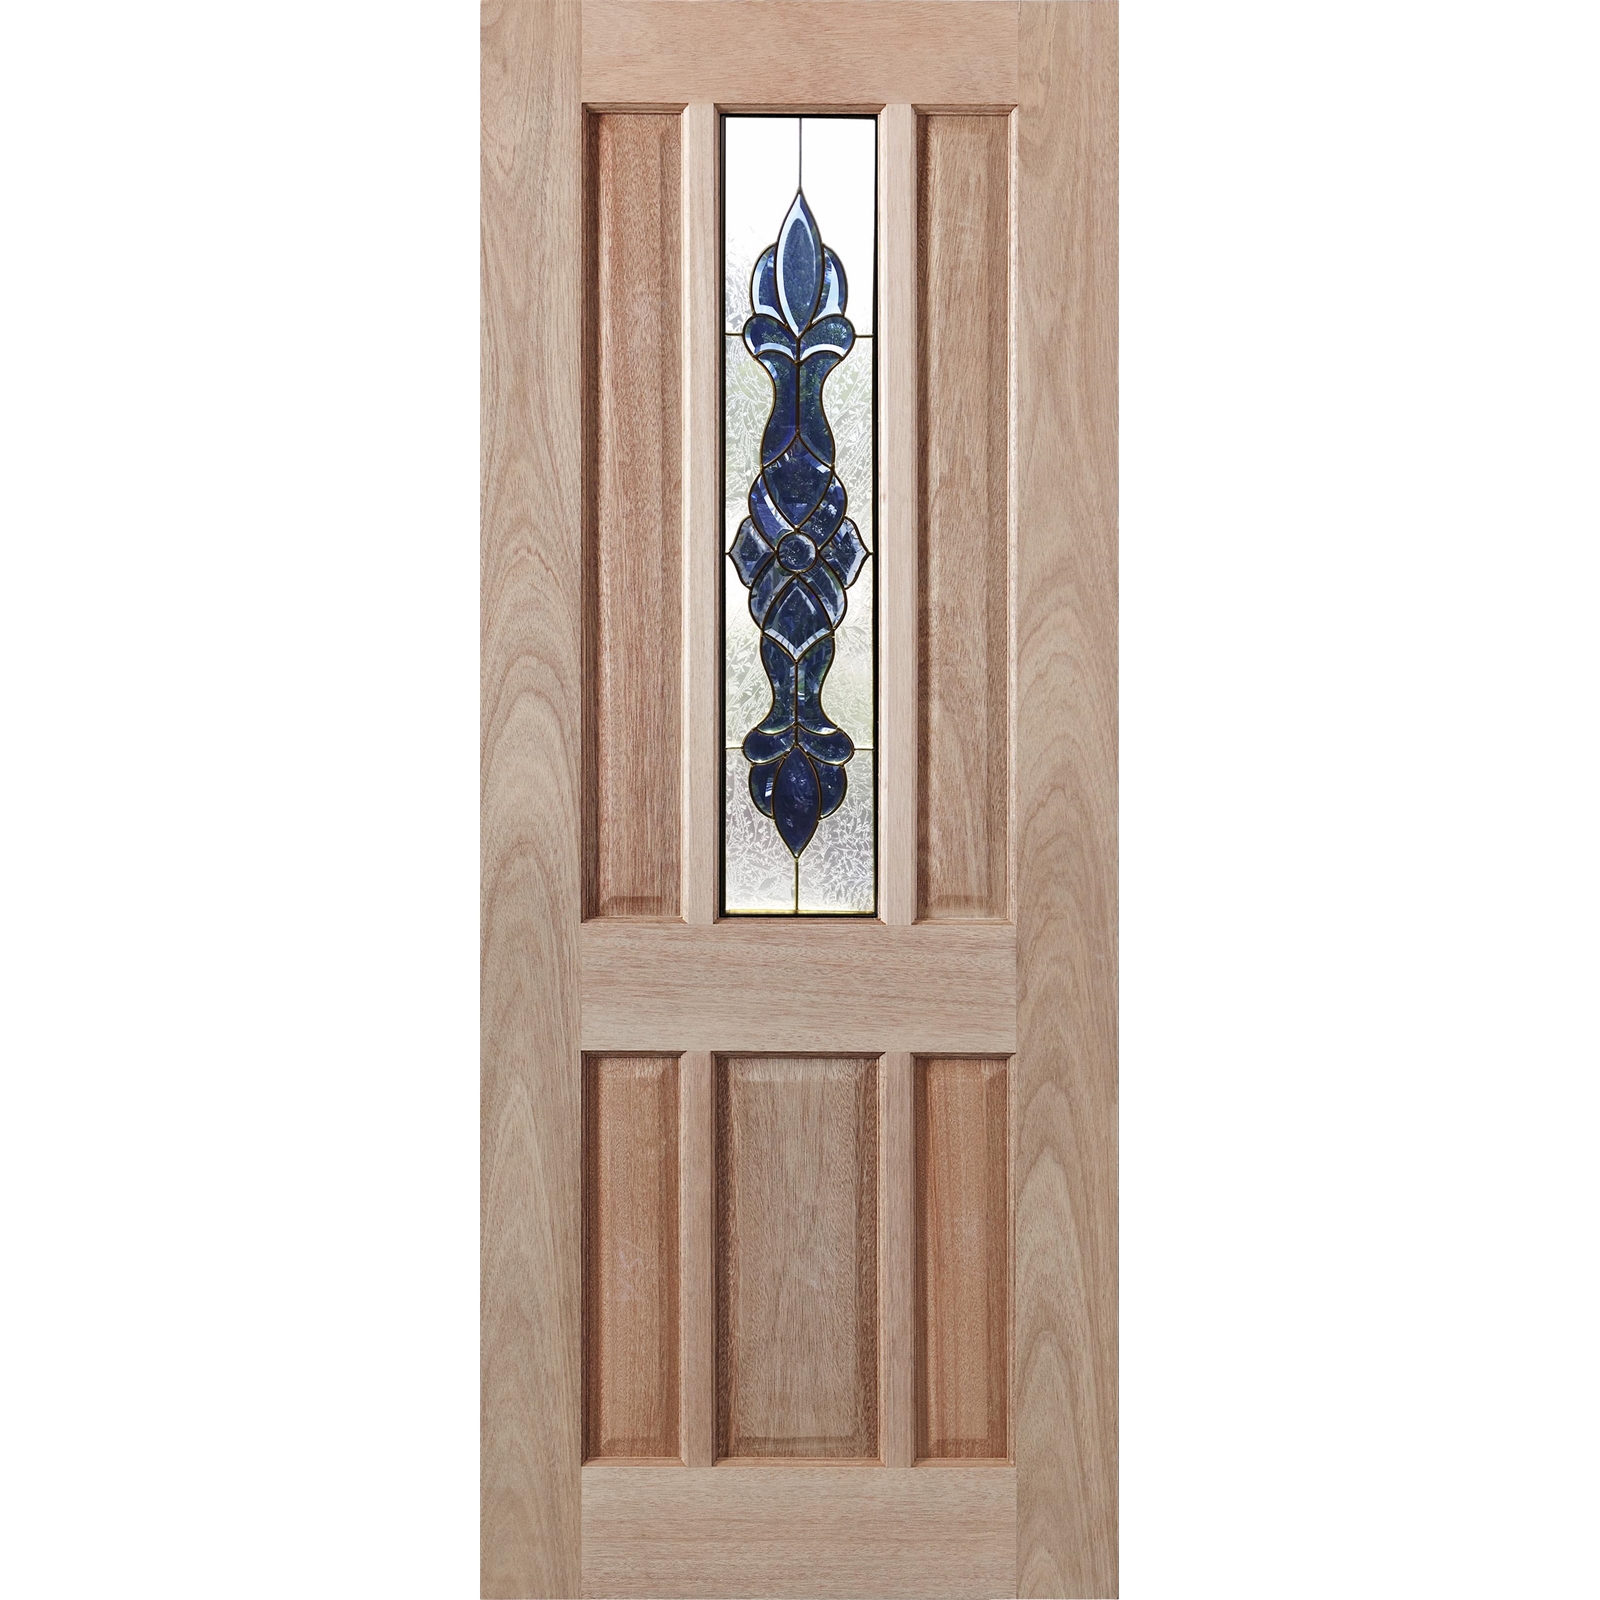 Woodcraft Doors 2040 x 820 x 40mm Hamlett Entrance Door With Blue Bevelled Mirror Glass